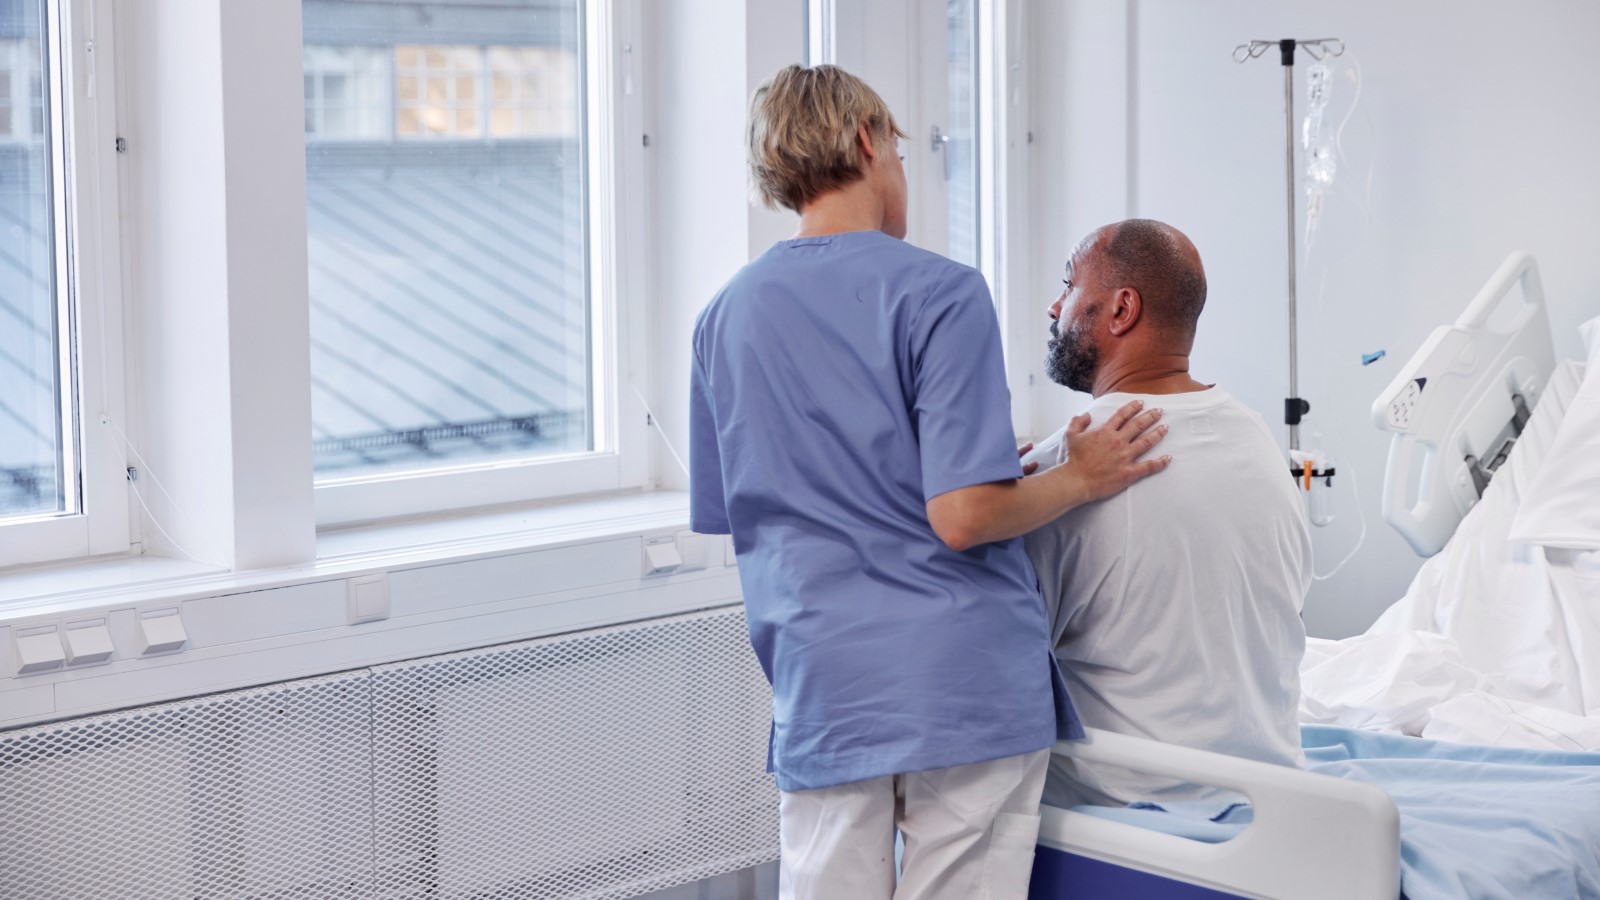 En sjuksköterska klappar en patient på ryggen, de tittar ut genom ett sjukhusfönster. 